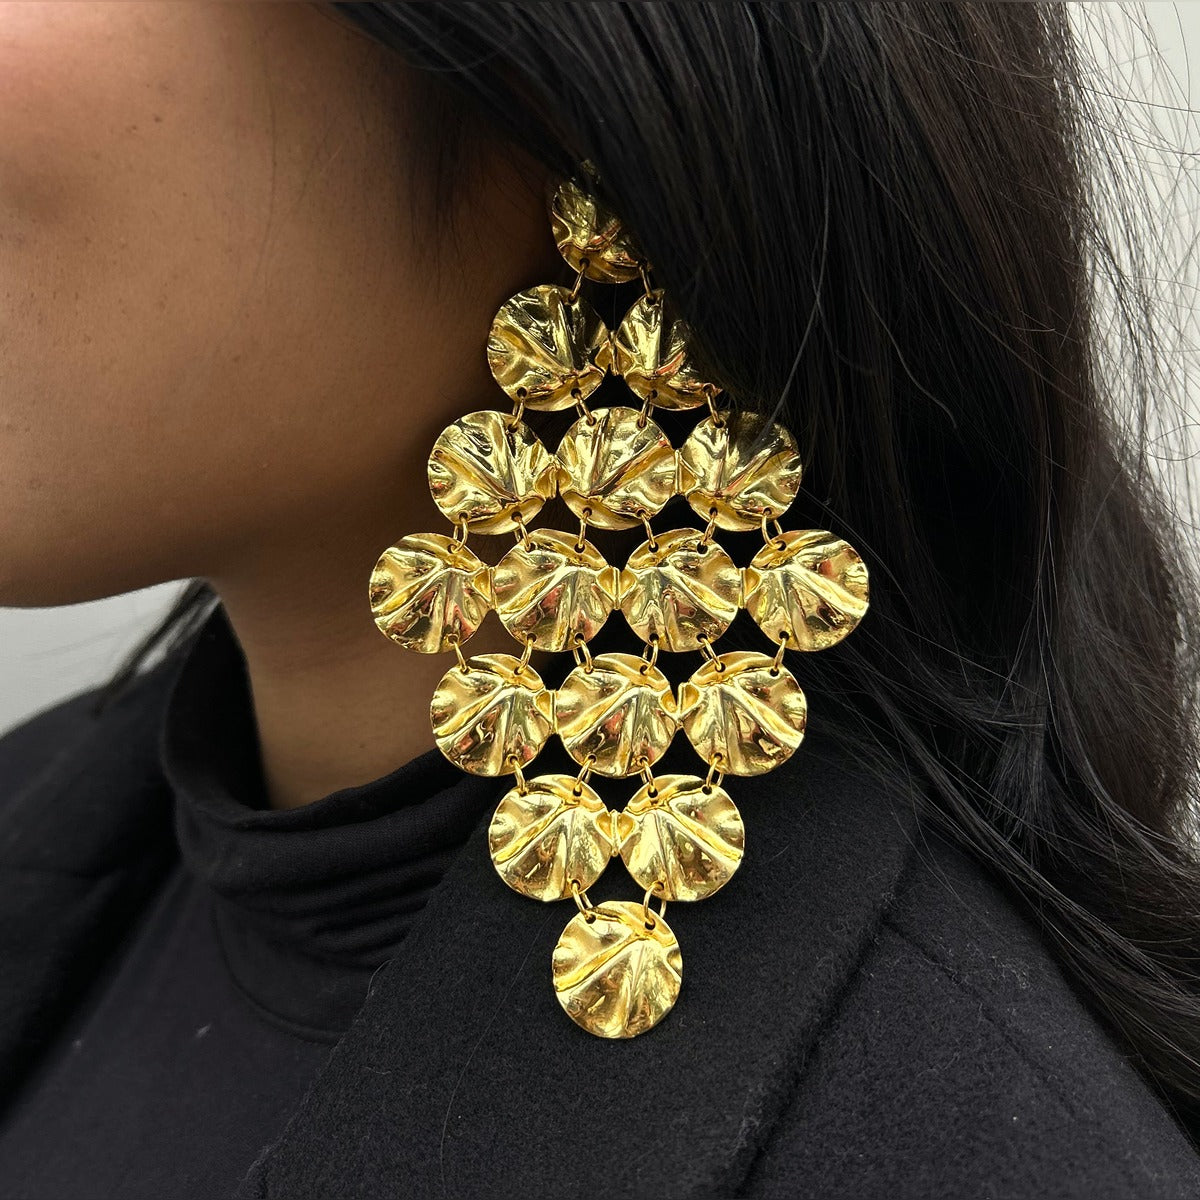 Stone Earrings - Buy Stone Earrings Online in India